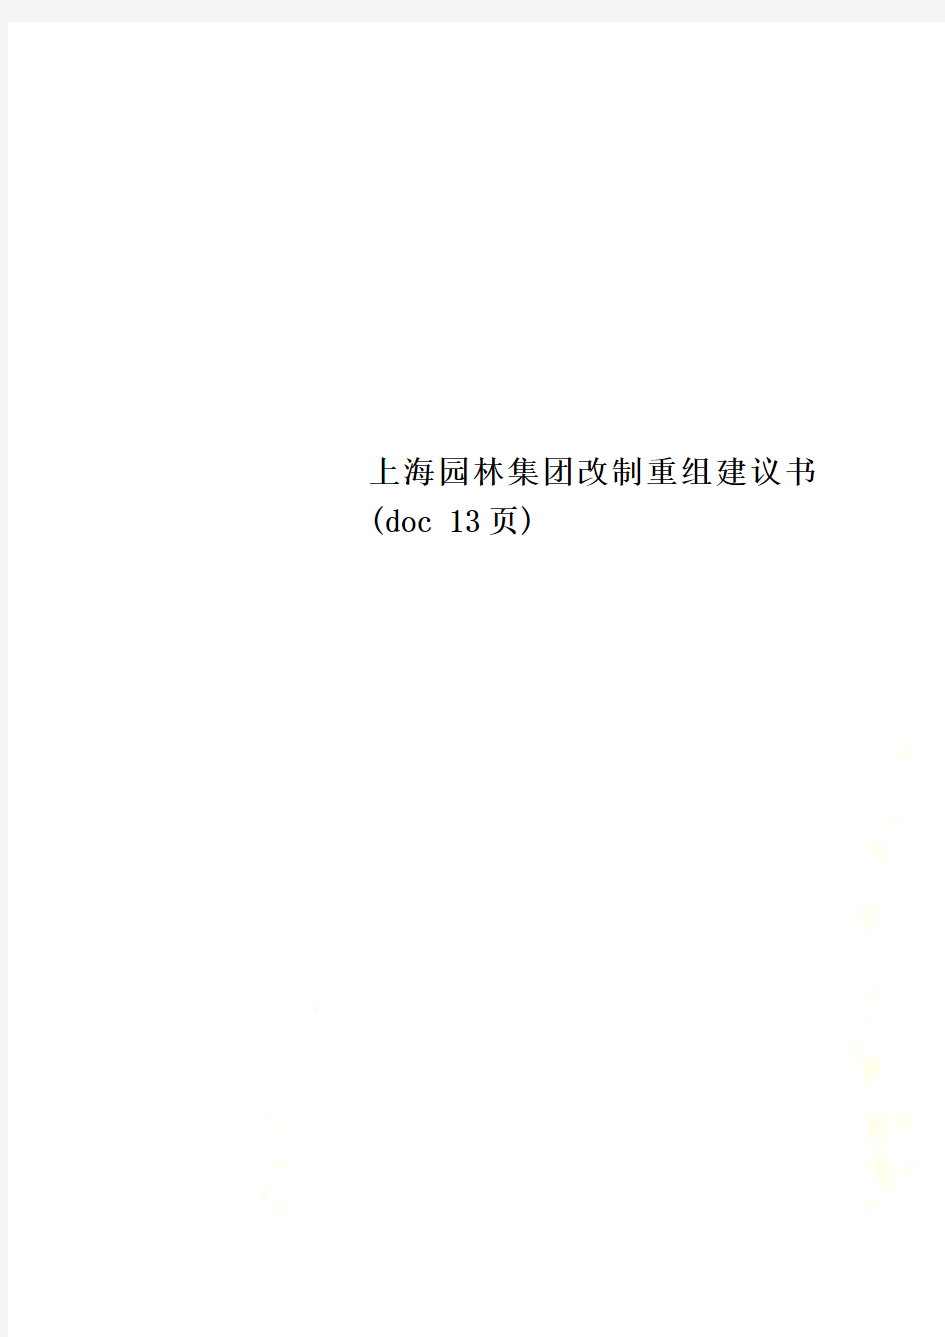 上海园林集团改制重组建议书(doc 13页)